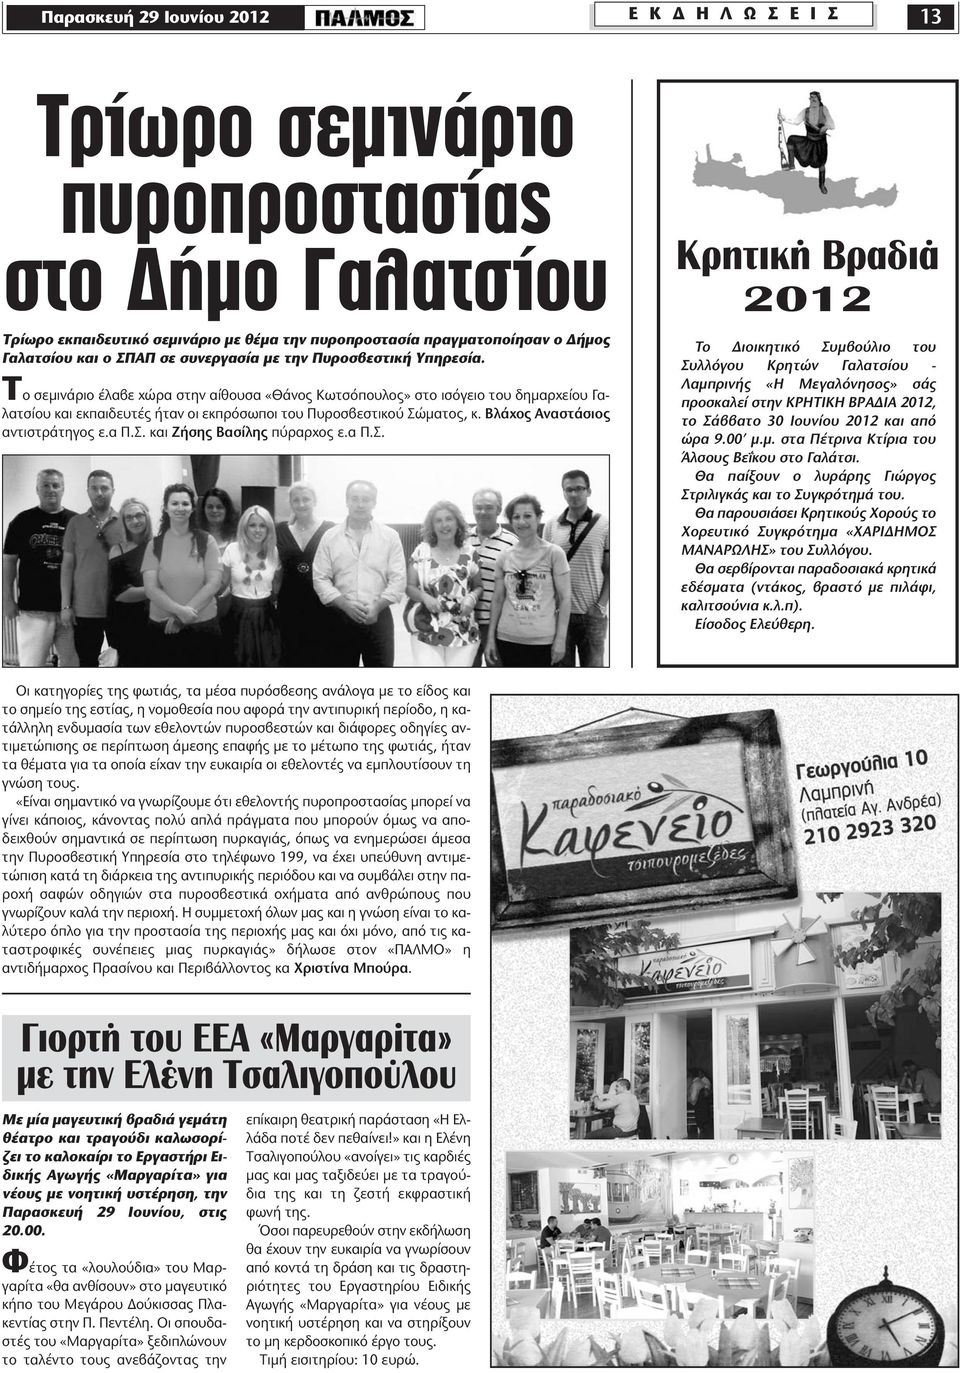 Το σεμινάριο έλαβε χώρα στην αίθουσα «Θάνος Κωτσόπουλος» στο ισόγειο του δημαρχείου Γαλατσίου και εκπαιδευτές ήταν οι εκπρόσωποι του Πυροσβεστικού Σώματος, κ. Βλάχος Αναστάσιος αντιστράτηγος ε.α Π.Σ. και Ζήσης Βασίλης πύραρχος ε.